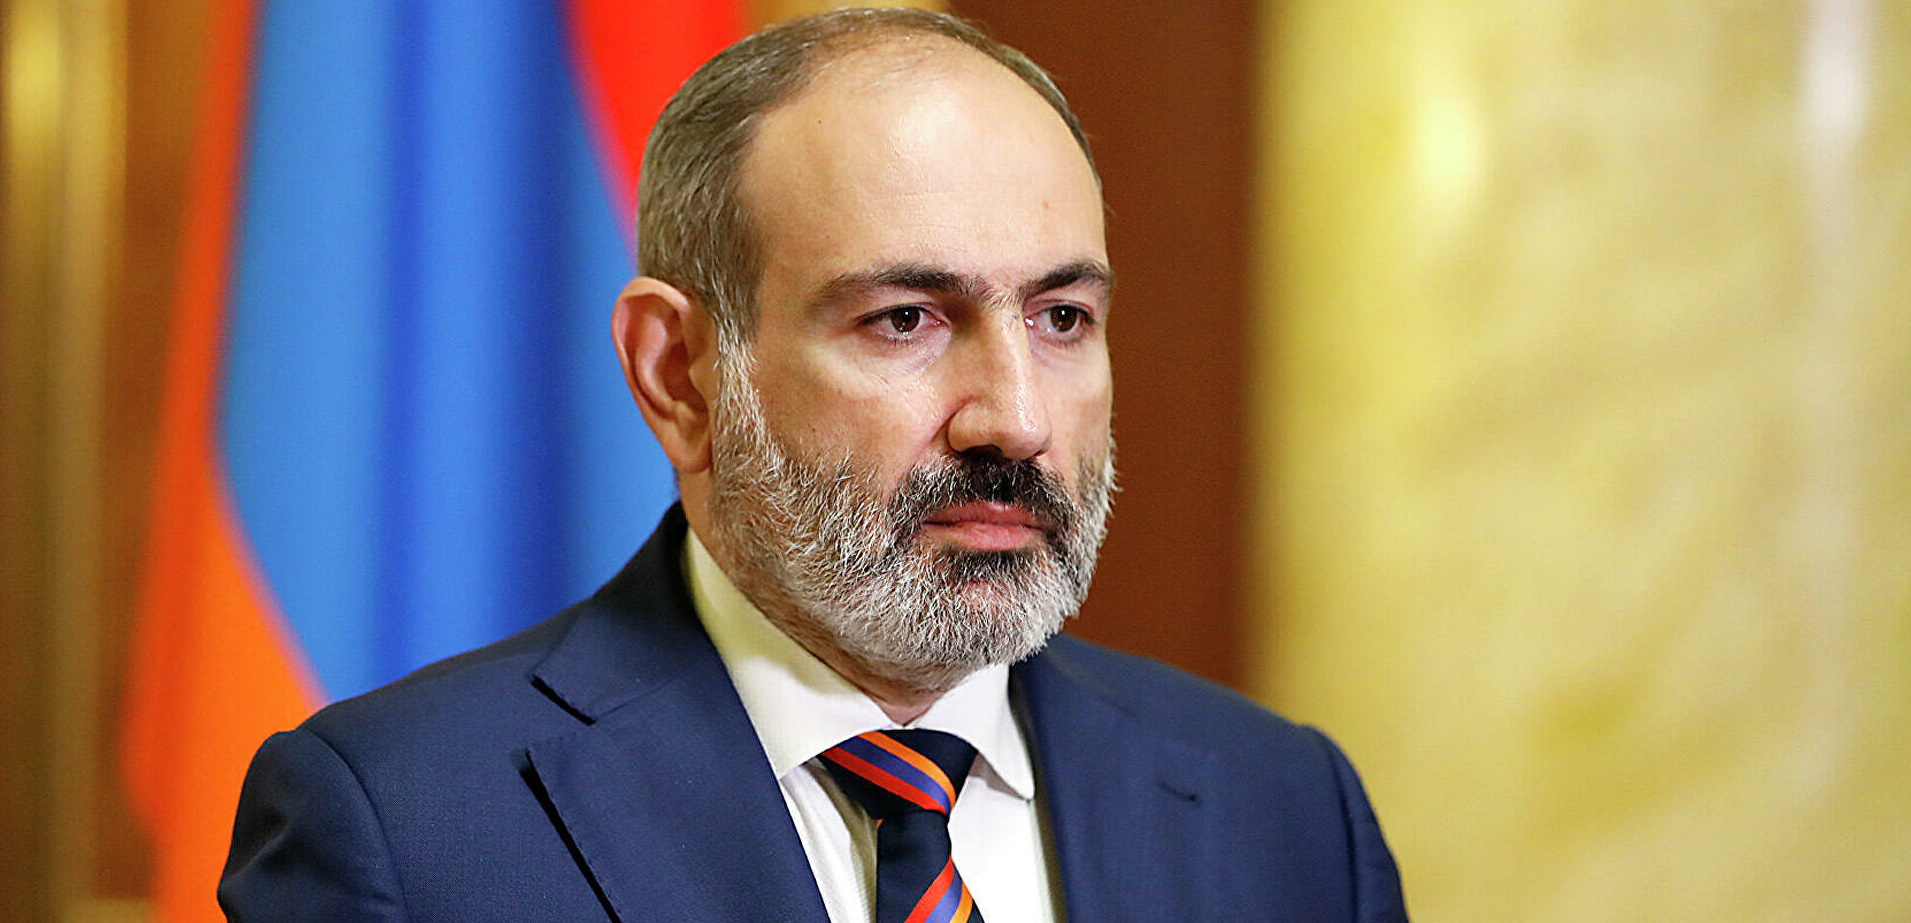 Новое заявление Пашиняна по прекращению огня в Карабахе: "Считаю соглашение приемлемым"